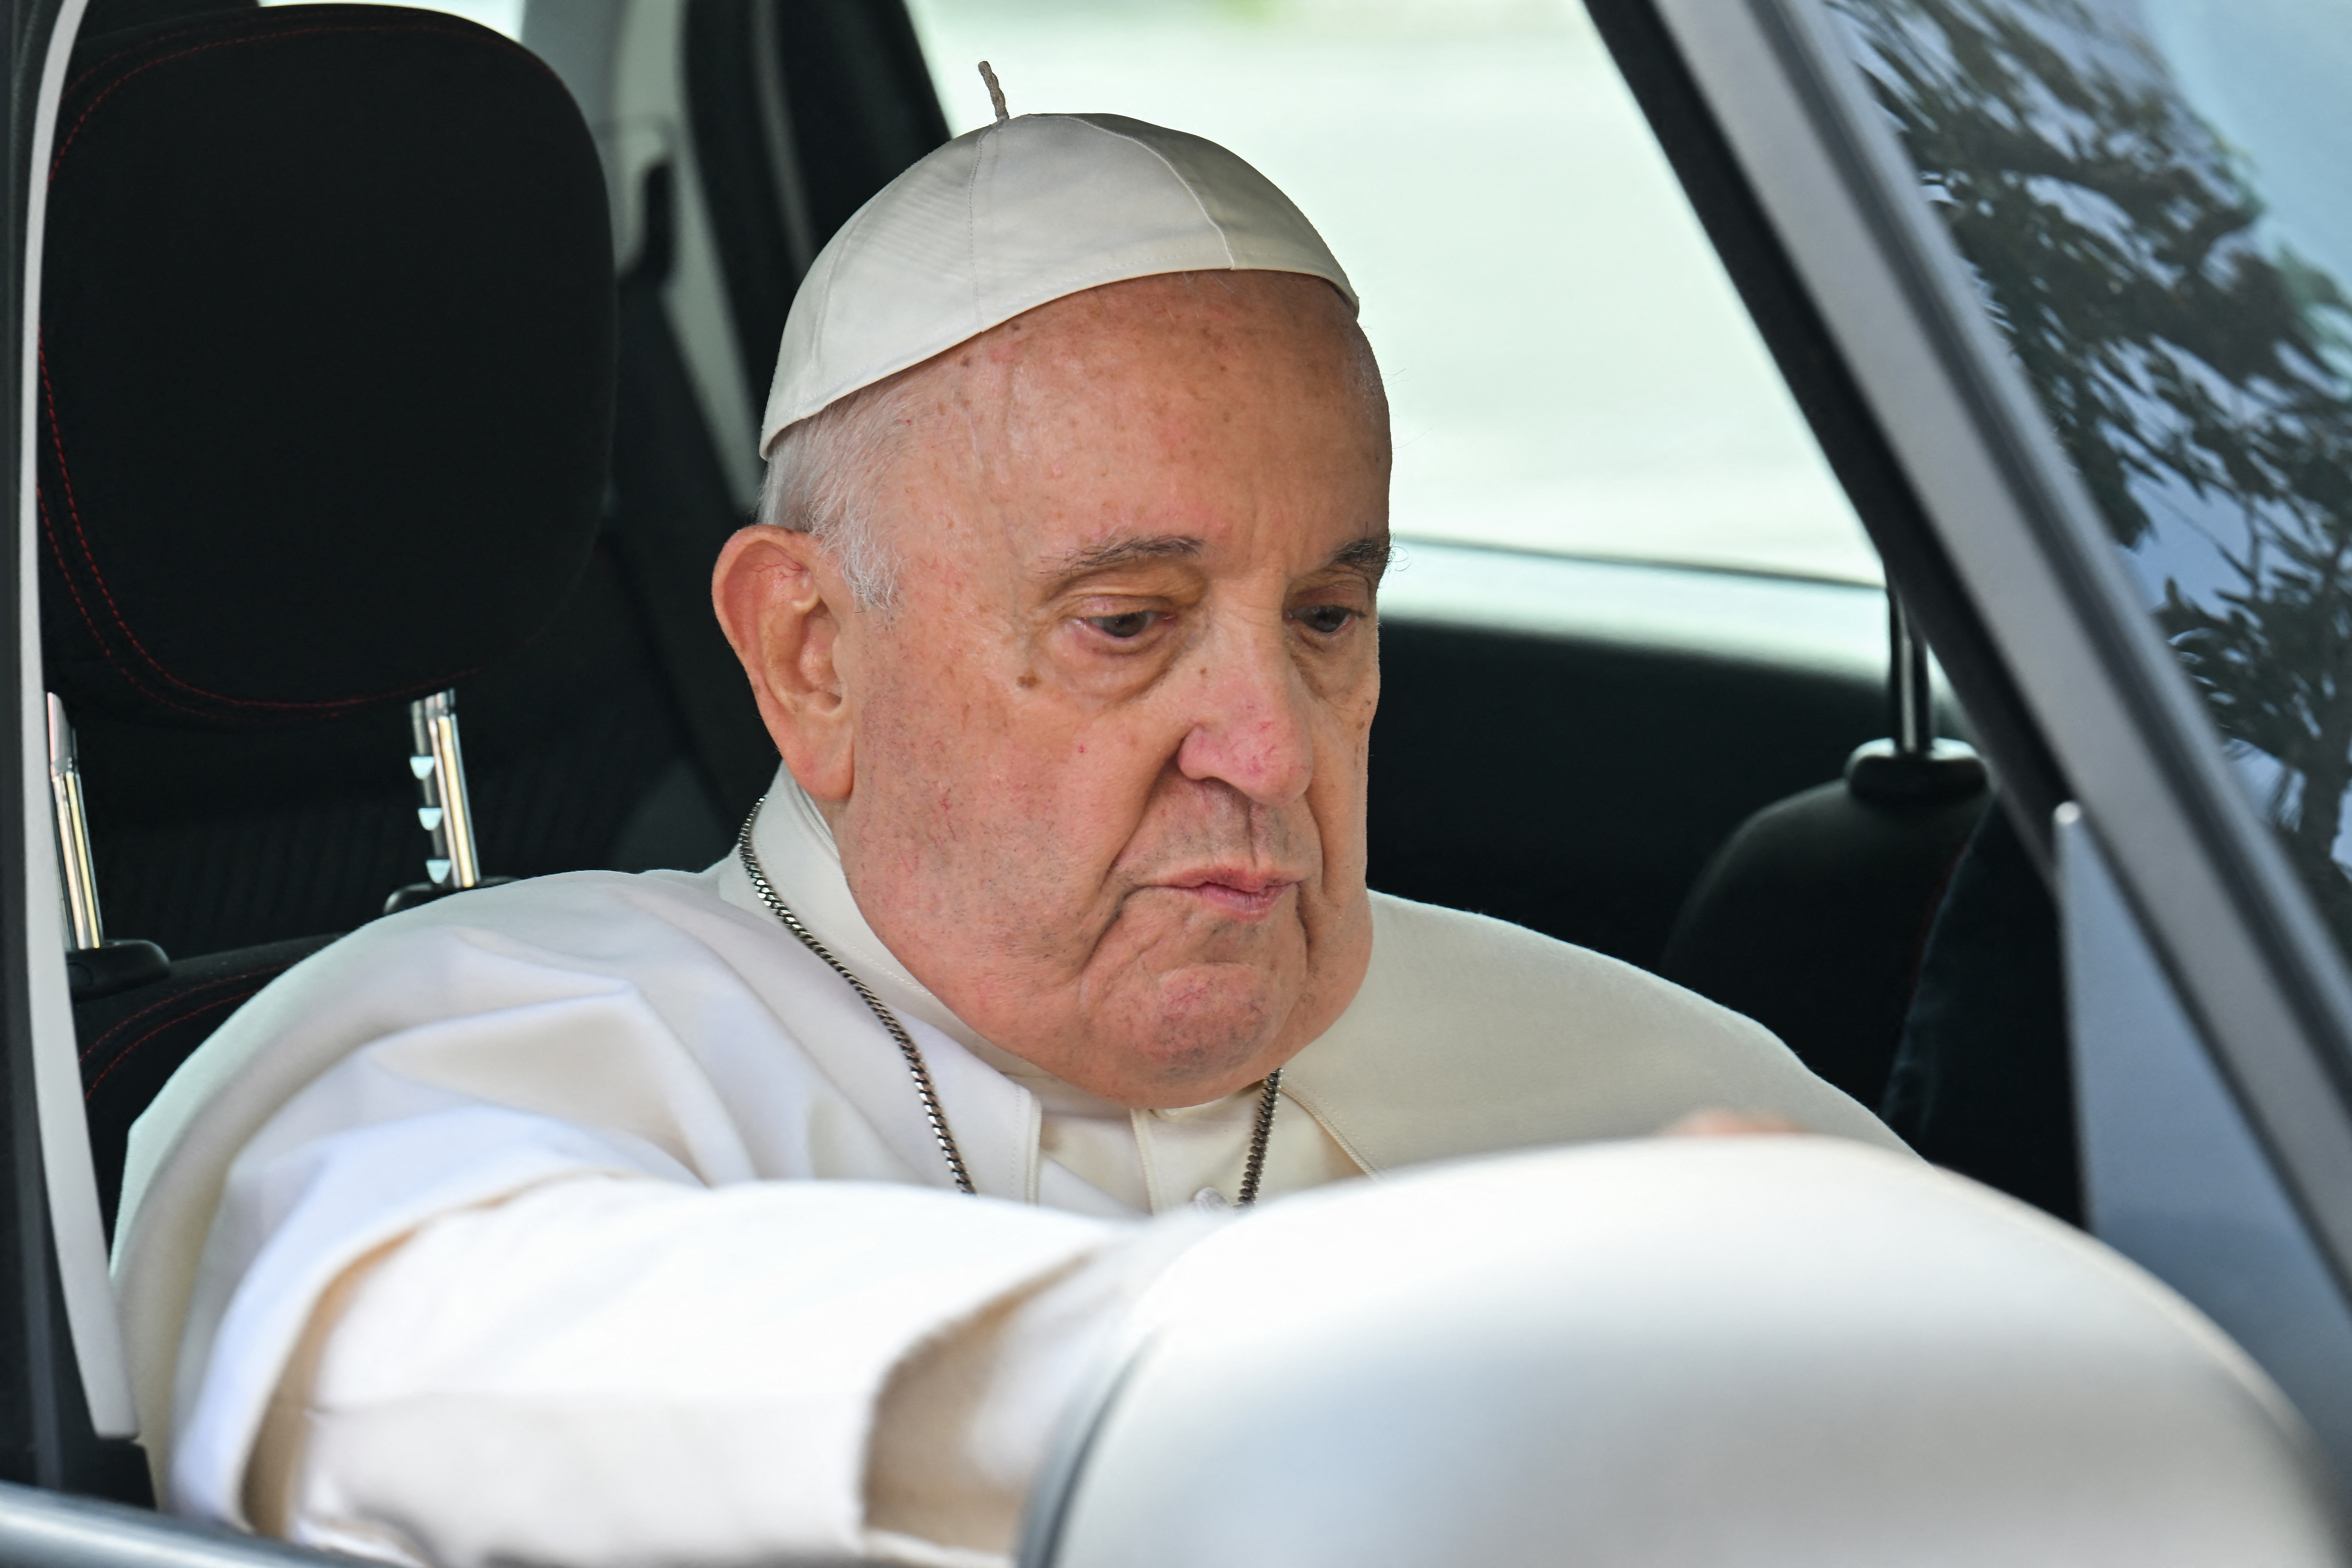 El papa Francisco lamenta las “circunstancias difíciles” de los cristianos en Nicaragua